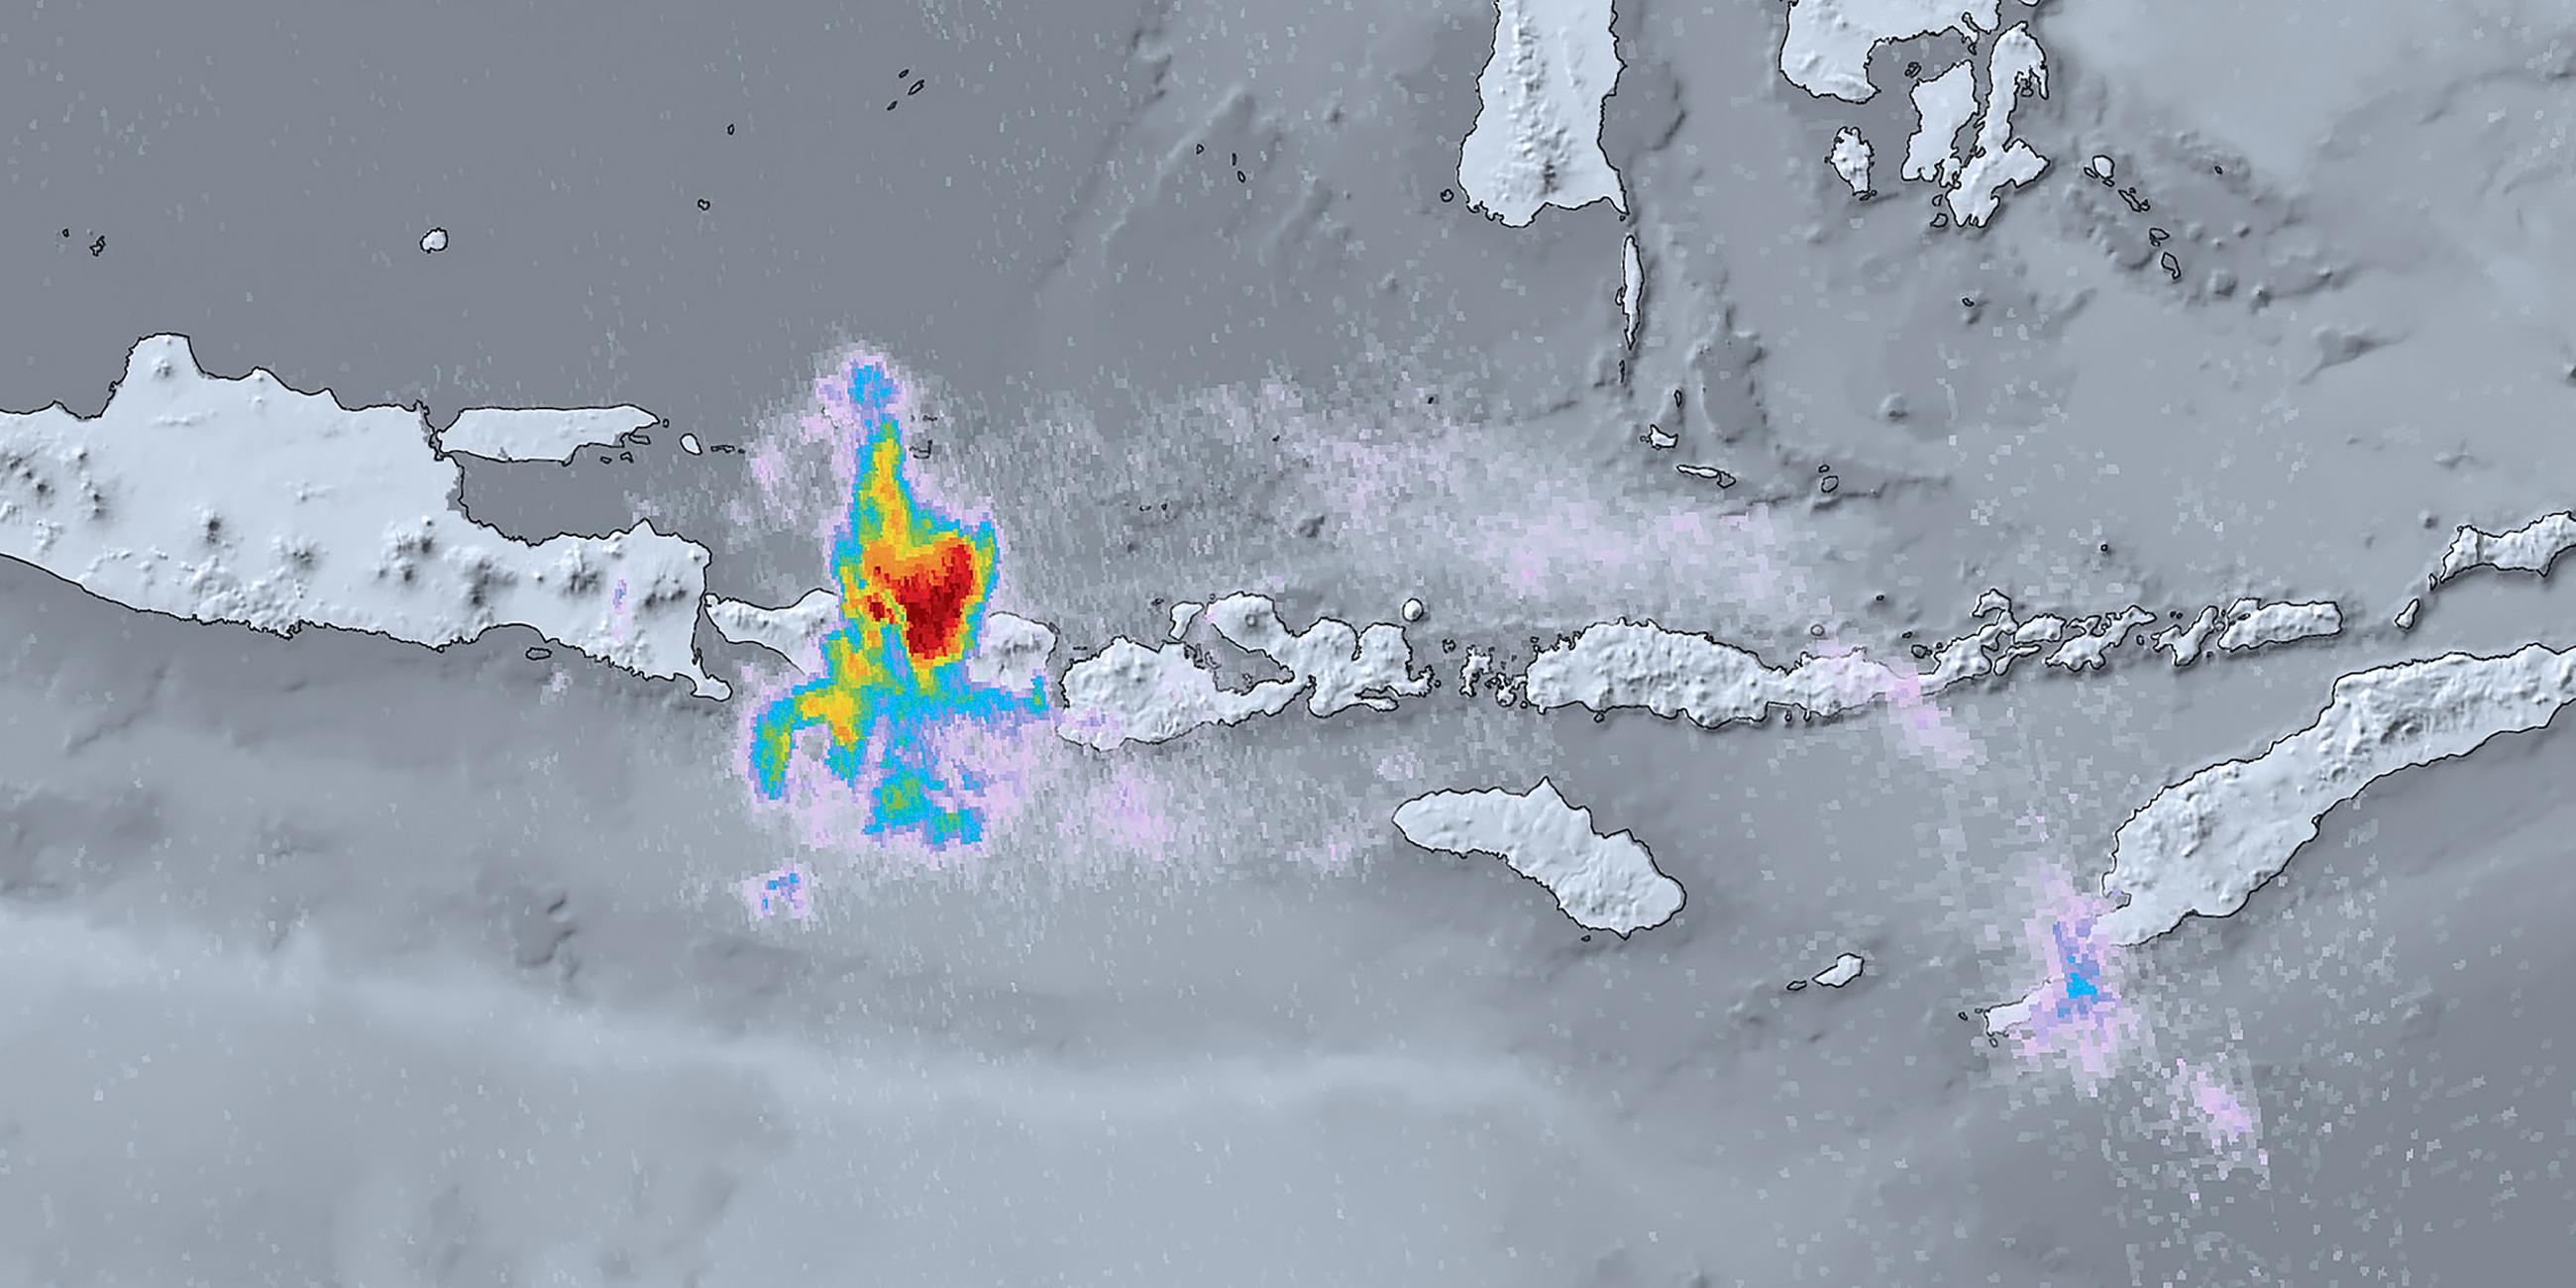 Archiv: Eine Aufnahme vom Umweltsatelliten Sentinel-5P zeigt Schwefeldioxid am Vulkan Mount Agung auf der Insel Bali, aufgenommen am 27.11.2017